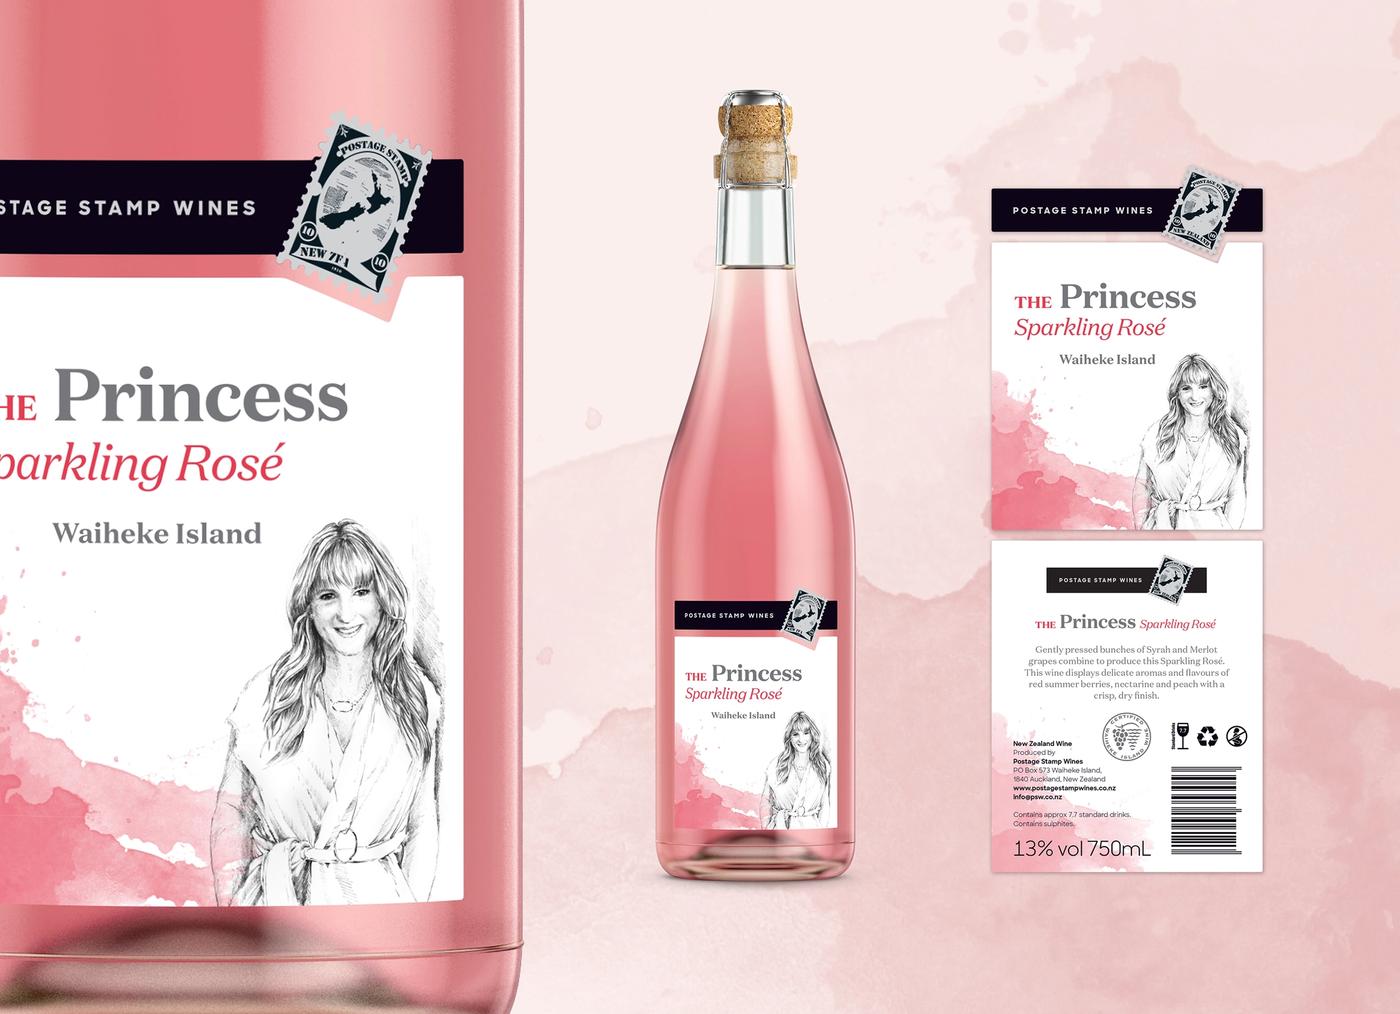 Postage stamp wines Sparkling Rosé